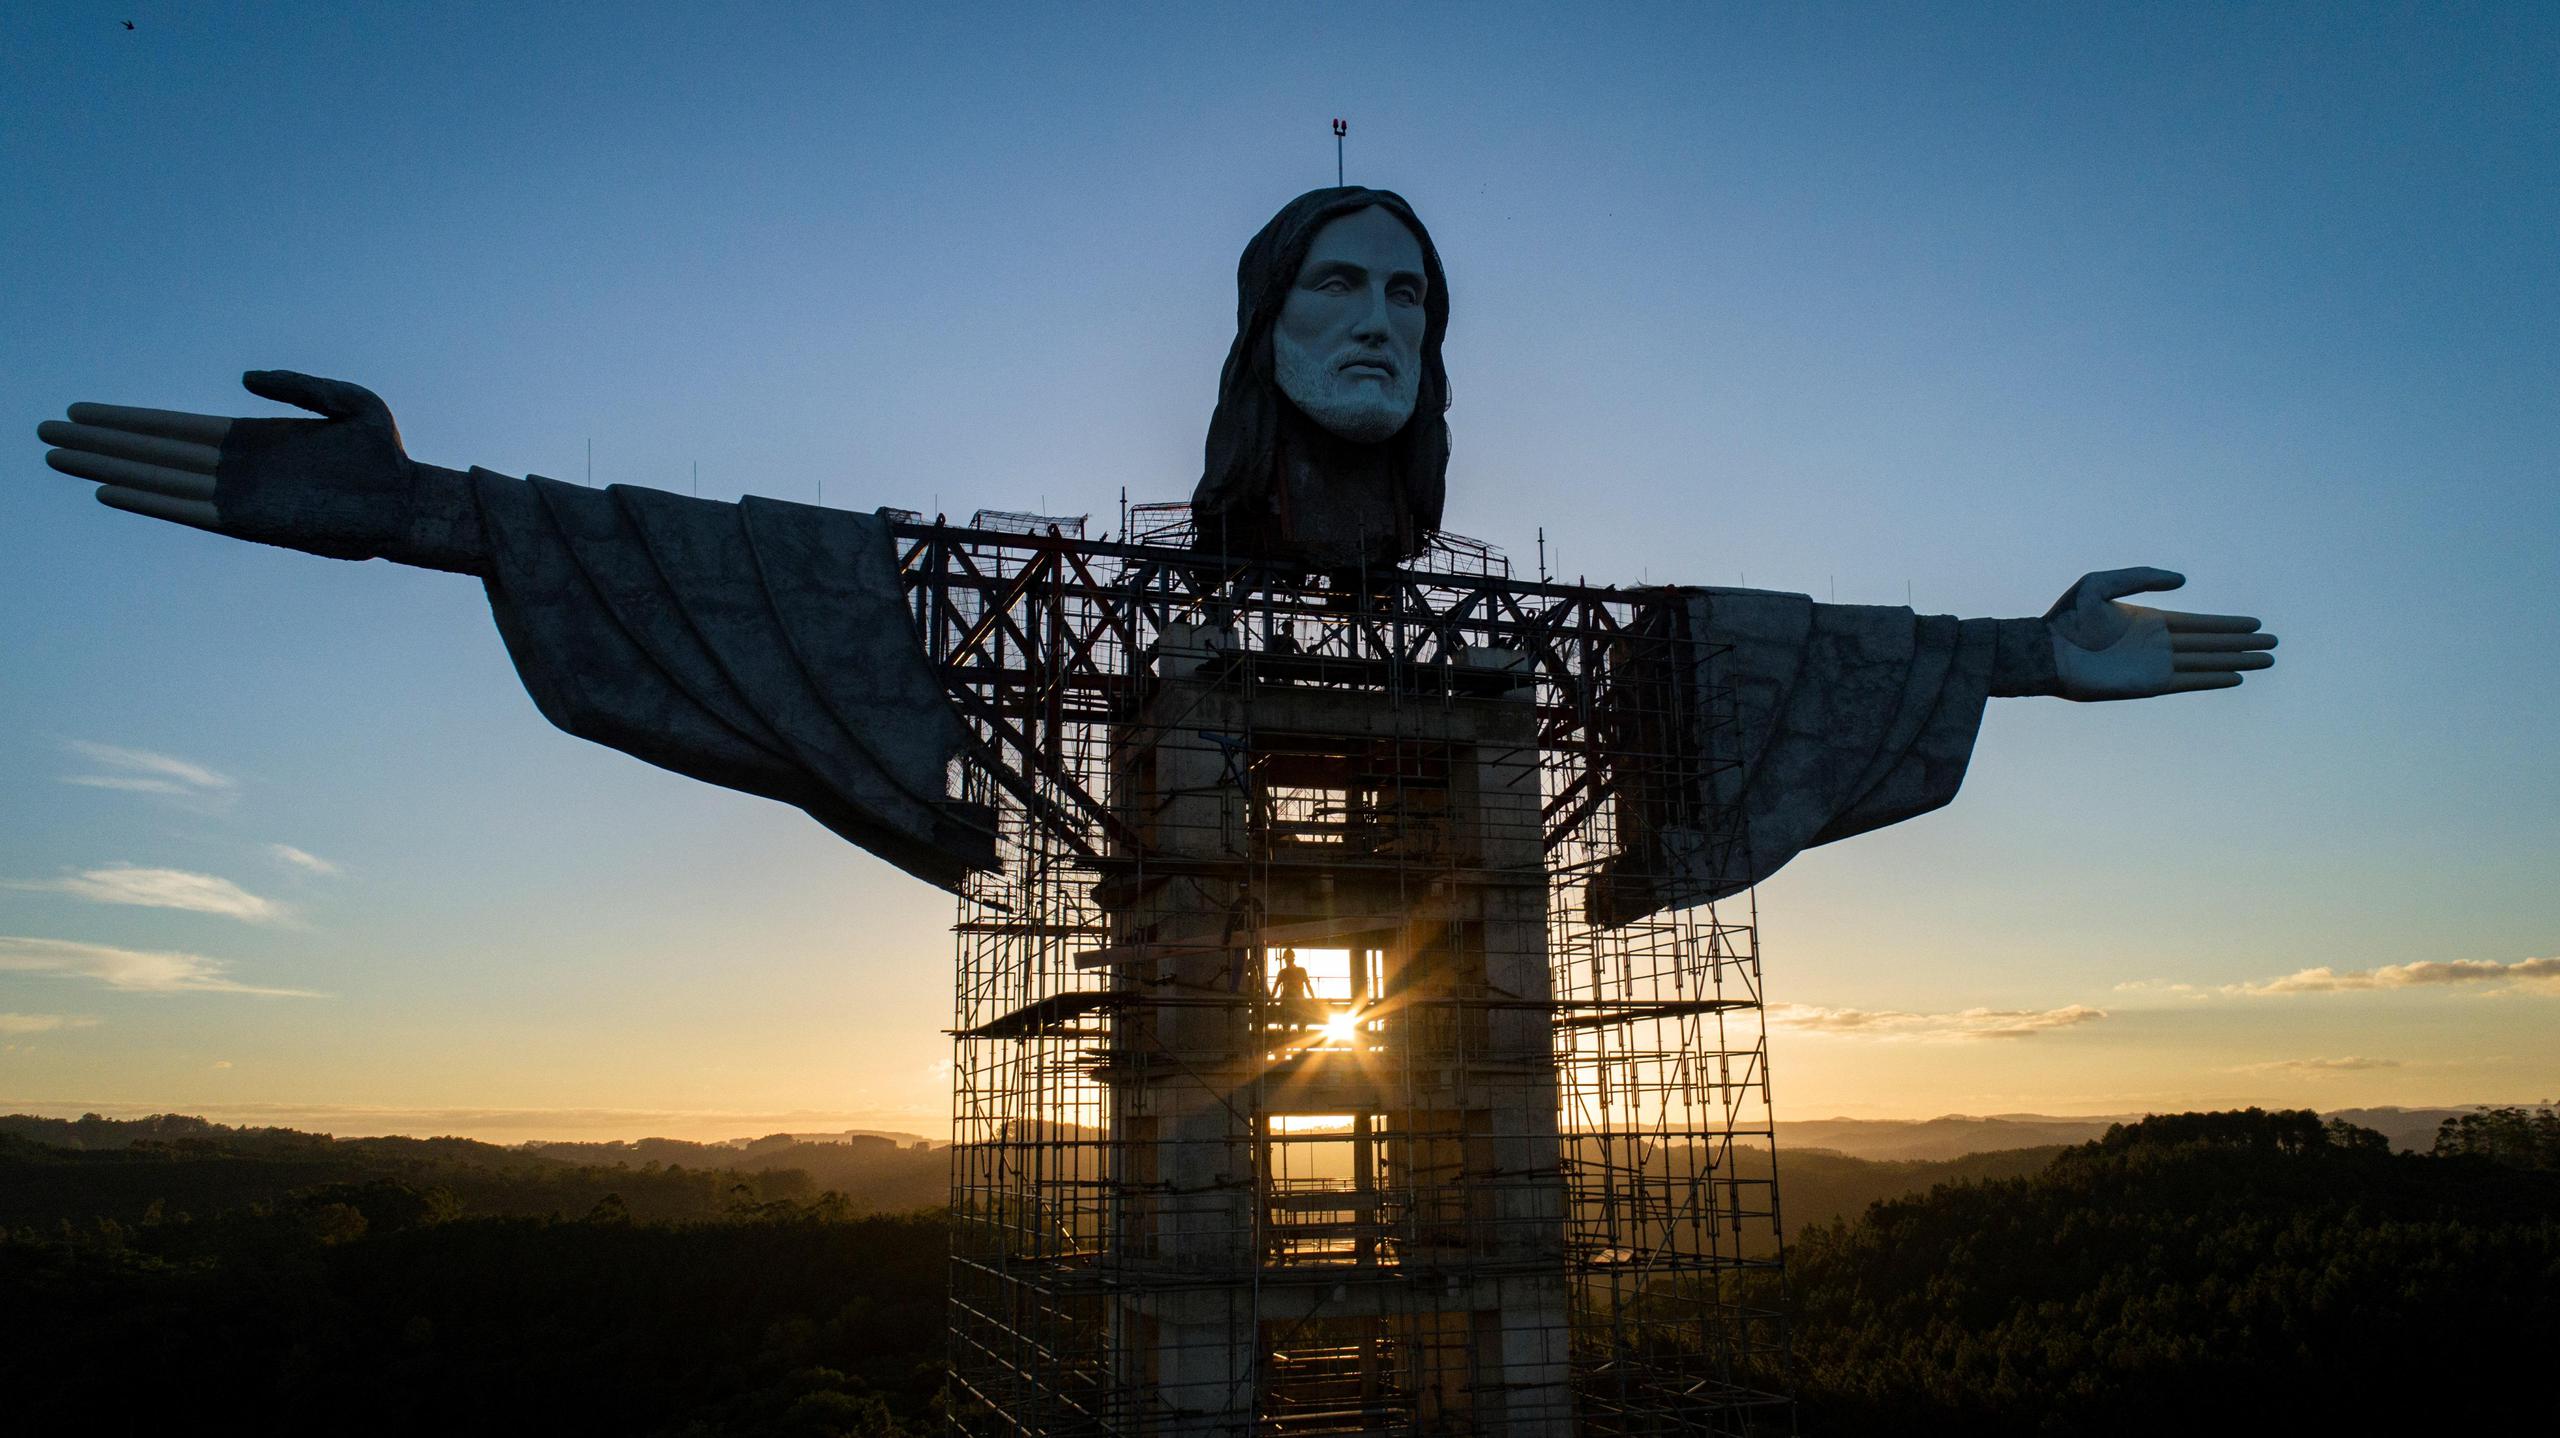 Esta estatua es promocionada como una de las "mayores del mundo" en homenaje a Jesús de Nazaret, tras una similar inaugurada en 2010 en la ciudad polaca de Swiebodzin, que mide 52 metros, y como "la más alta de Brasil" con cinco metros más que el Cristo Redentor de Río de Janeiro.